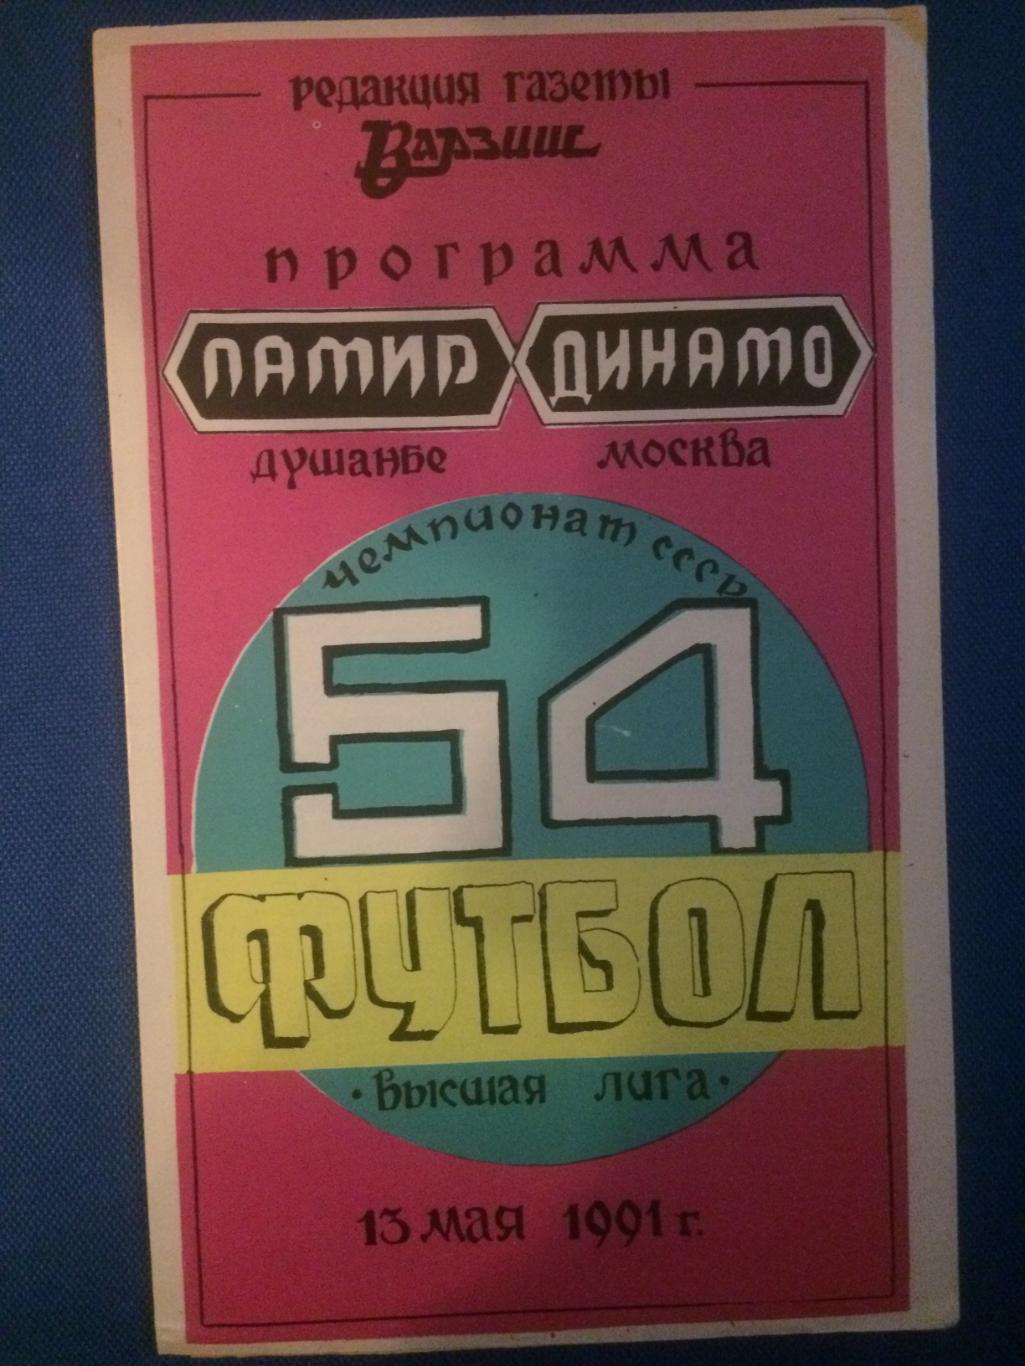 Памир (Душанбе) - Динамо (Москва) 13.05.1991 г.